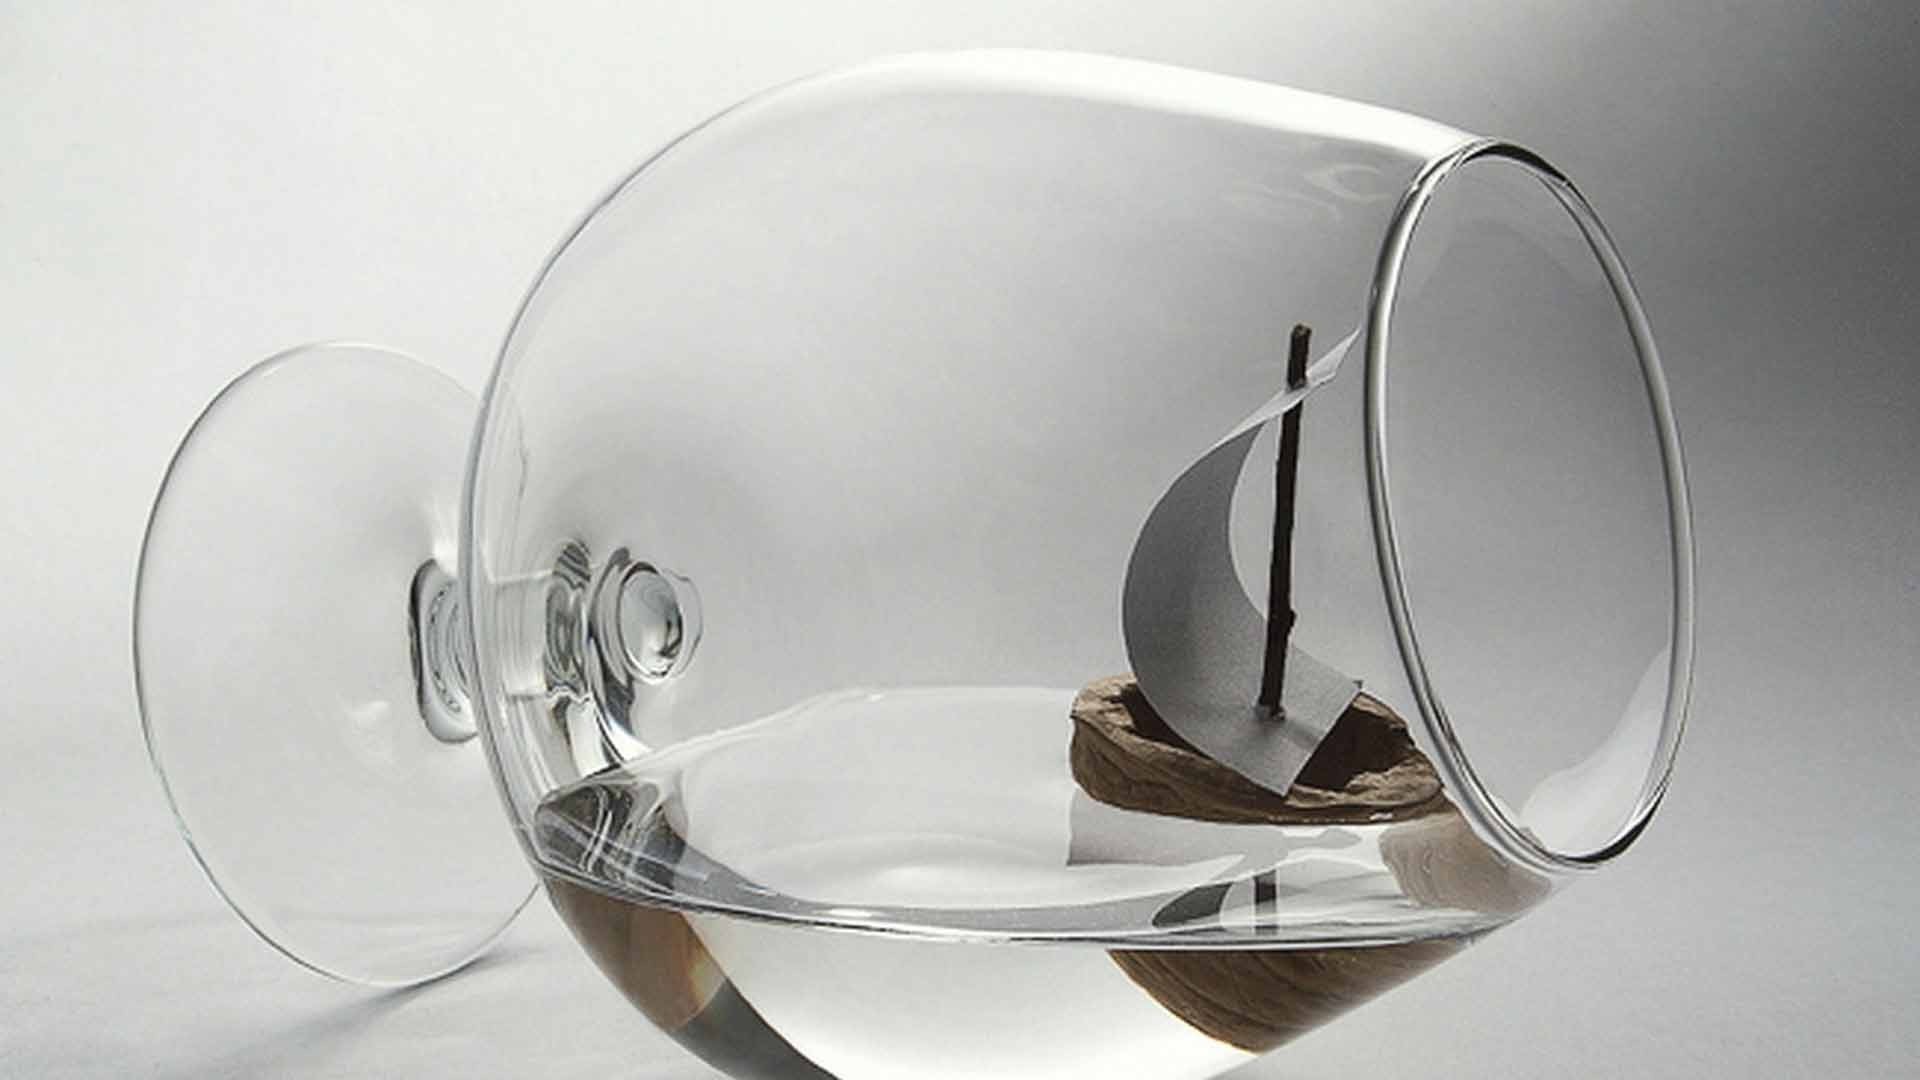 фотообработка посуда пустые стекло пить кубок посуда кухонные принадлежности рабочего стола посуда сталь отражение